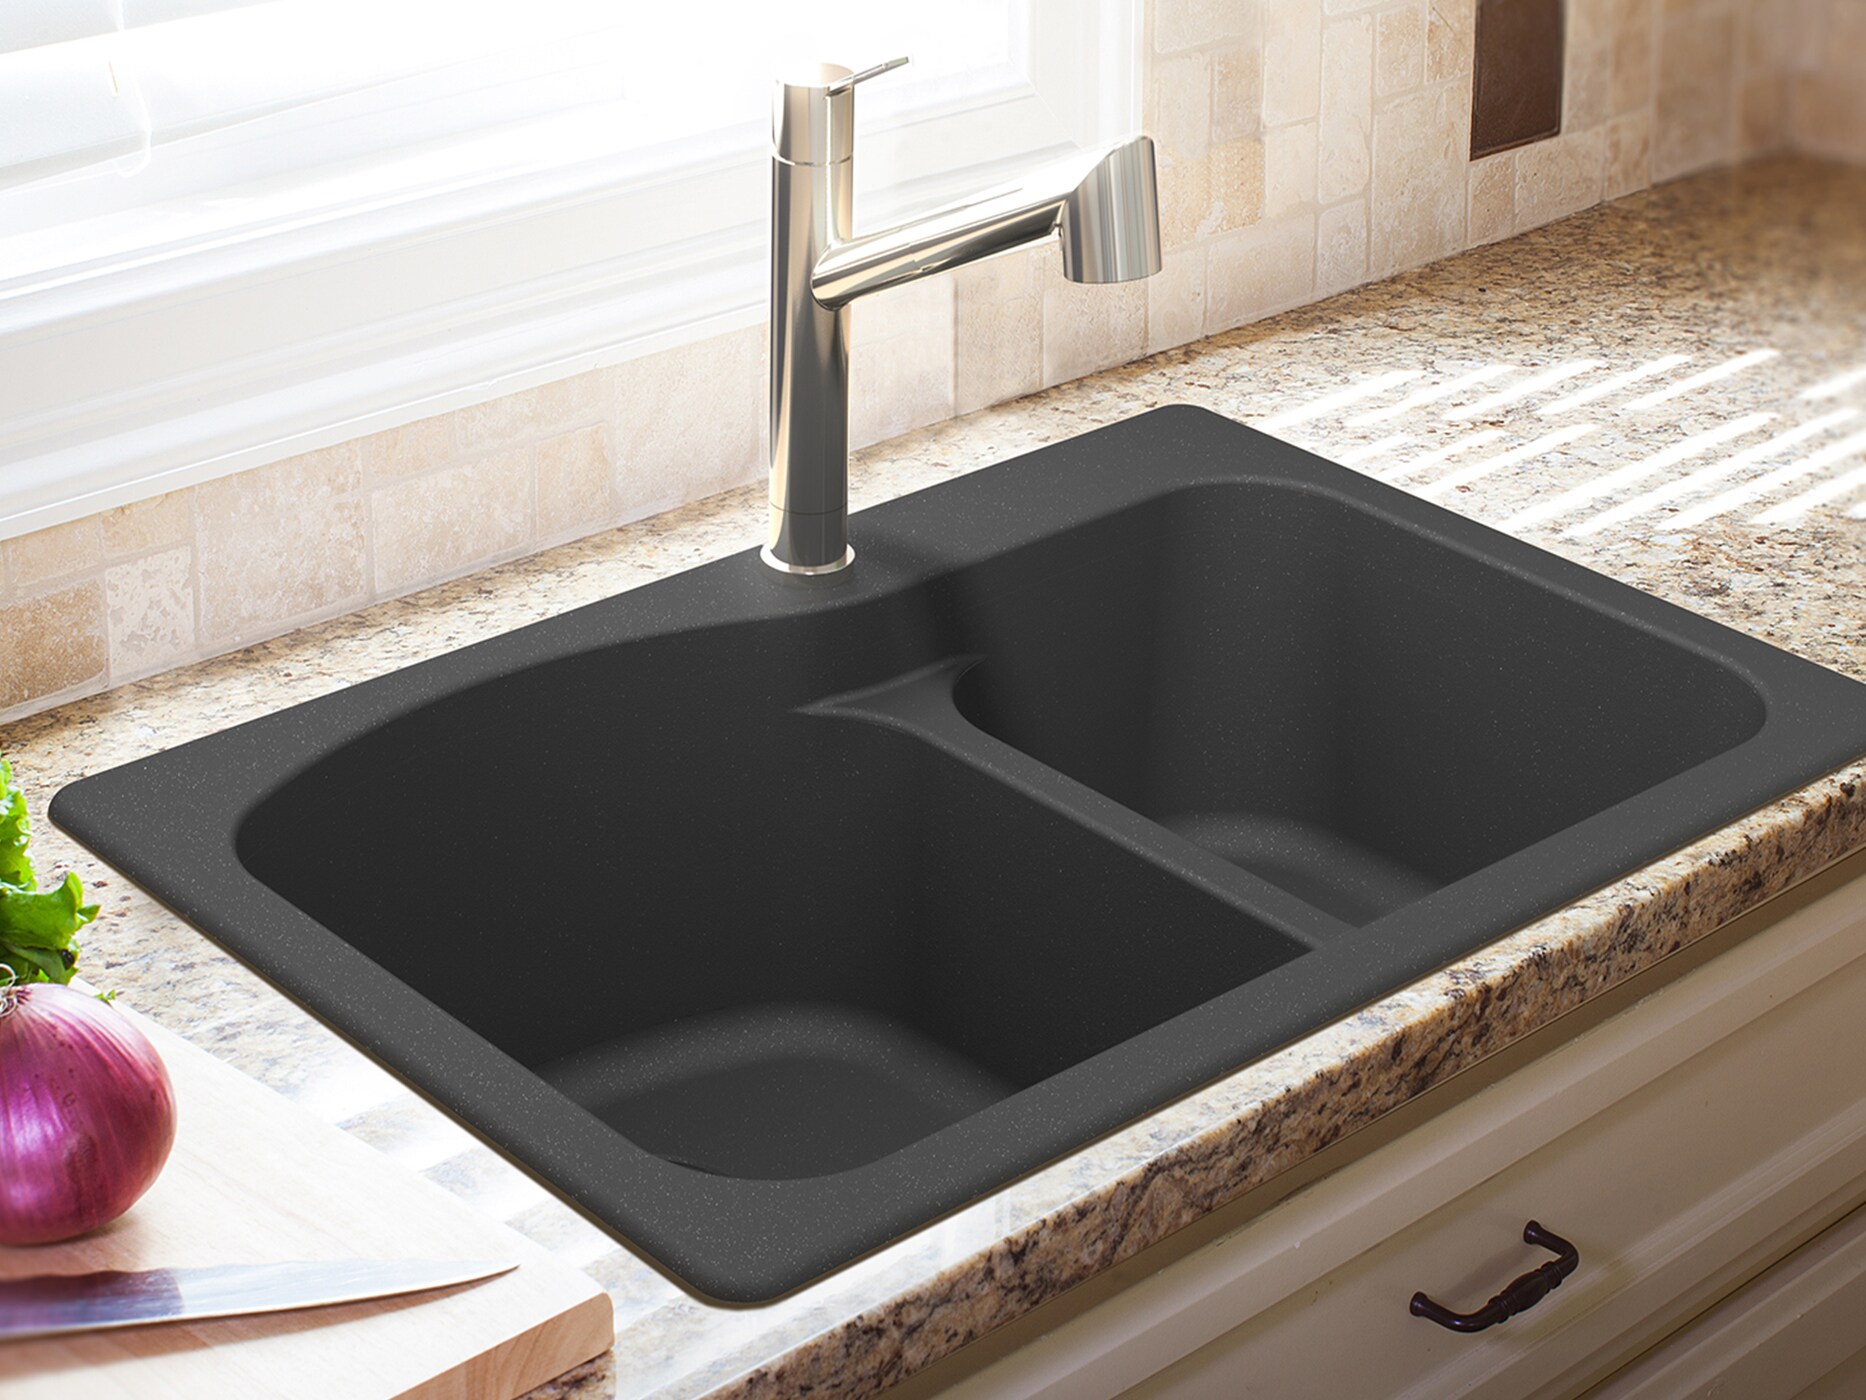 Black granite kitchen sink two breasts, luxury sink, kitchen